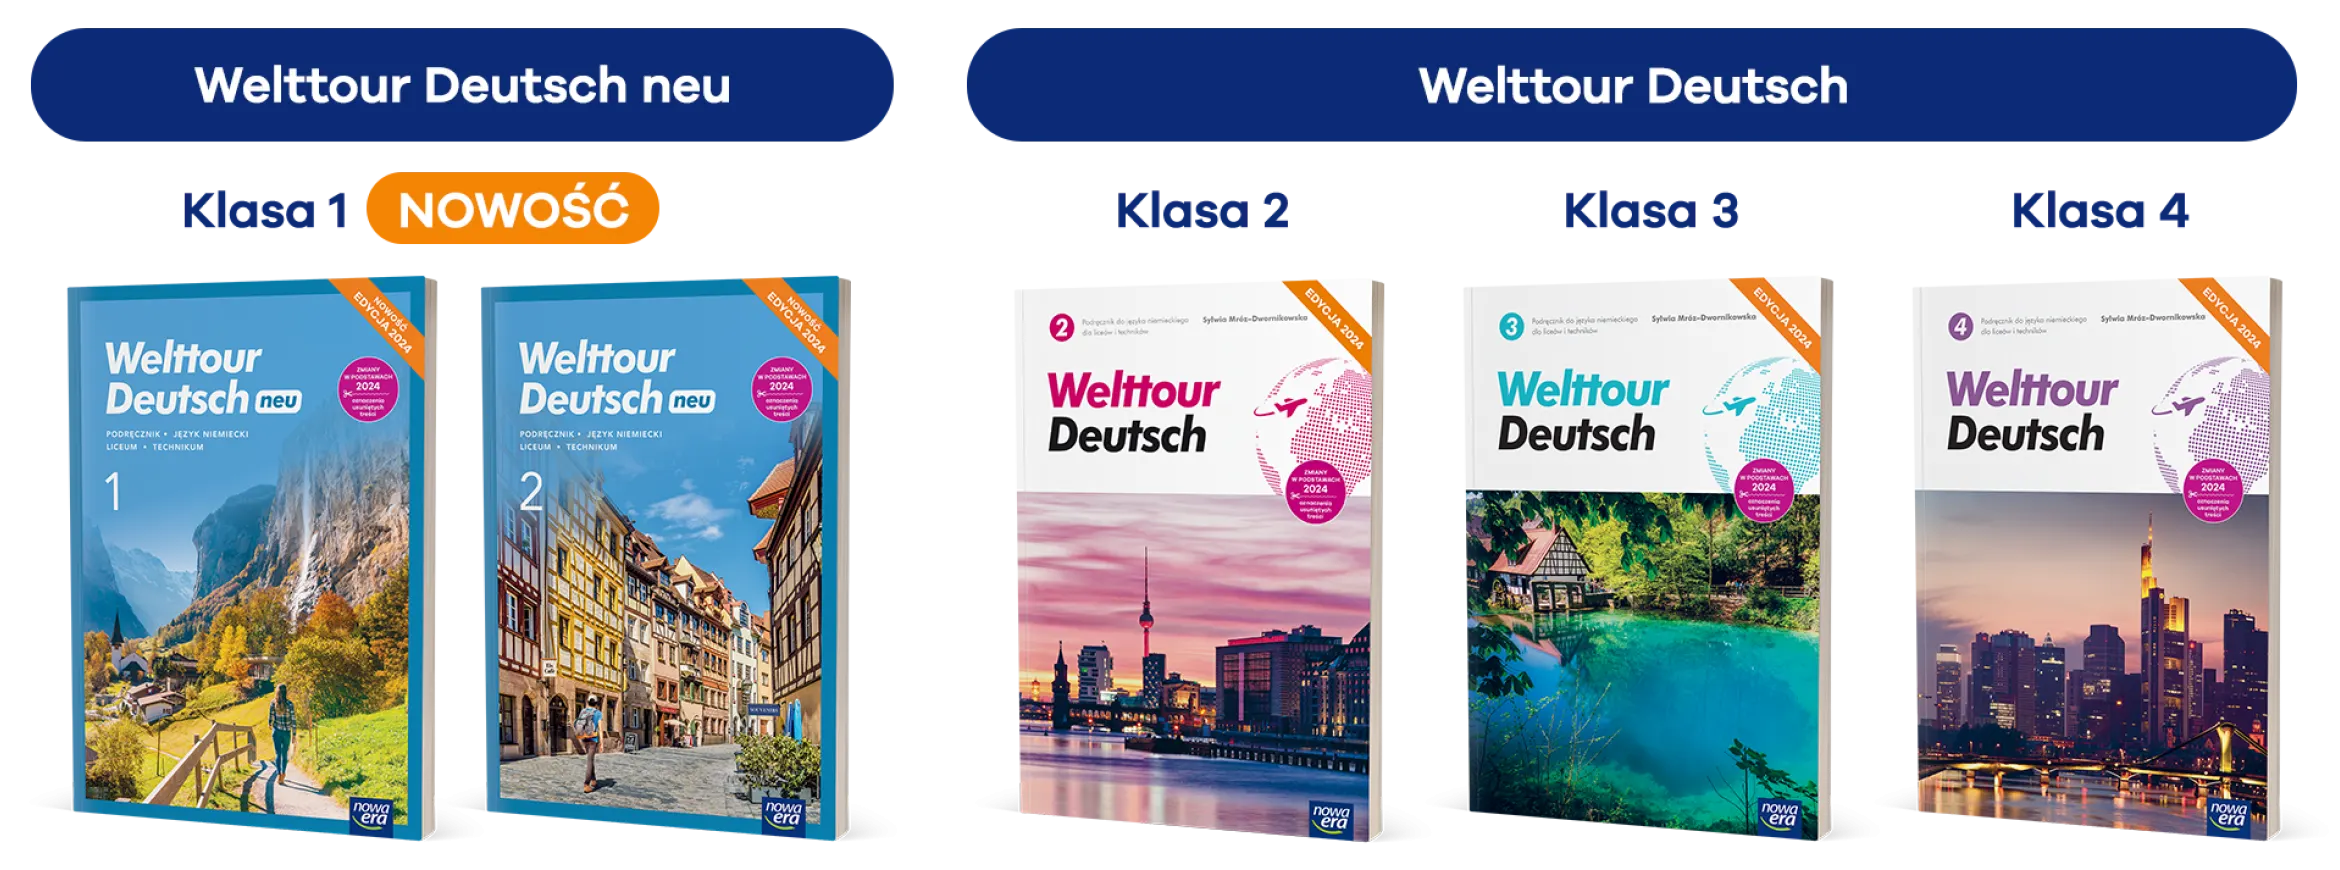 Seria Welttour Deutsch neu